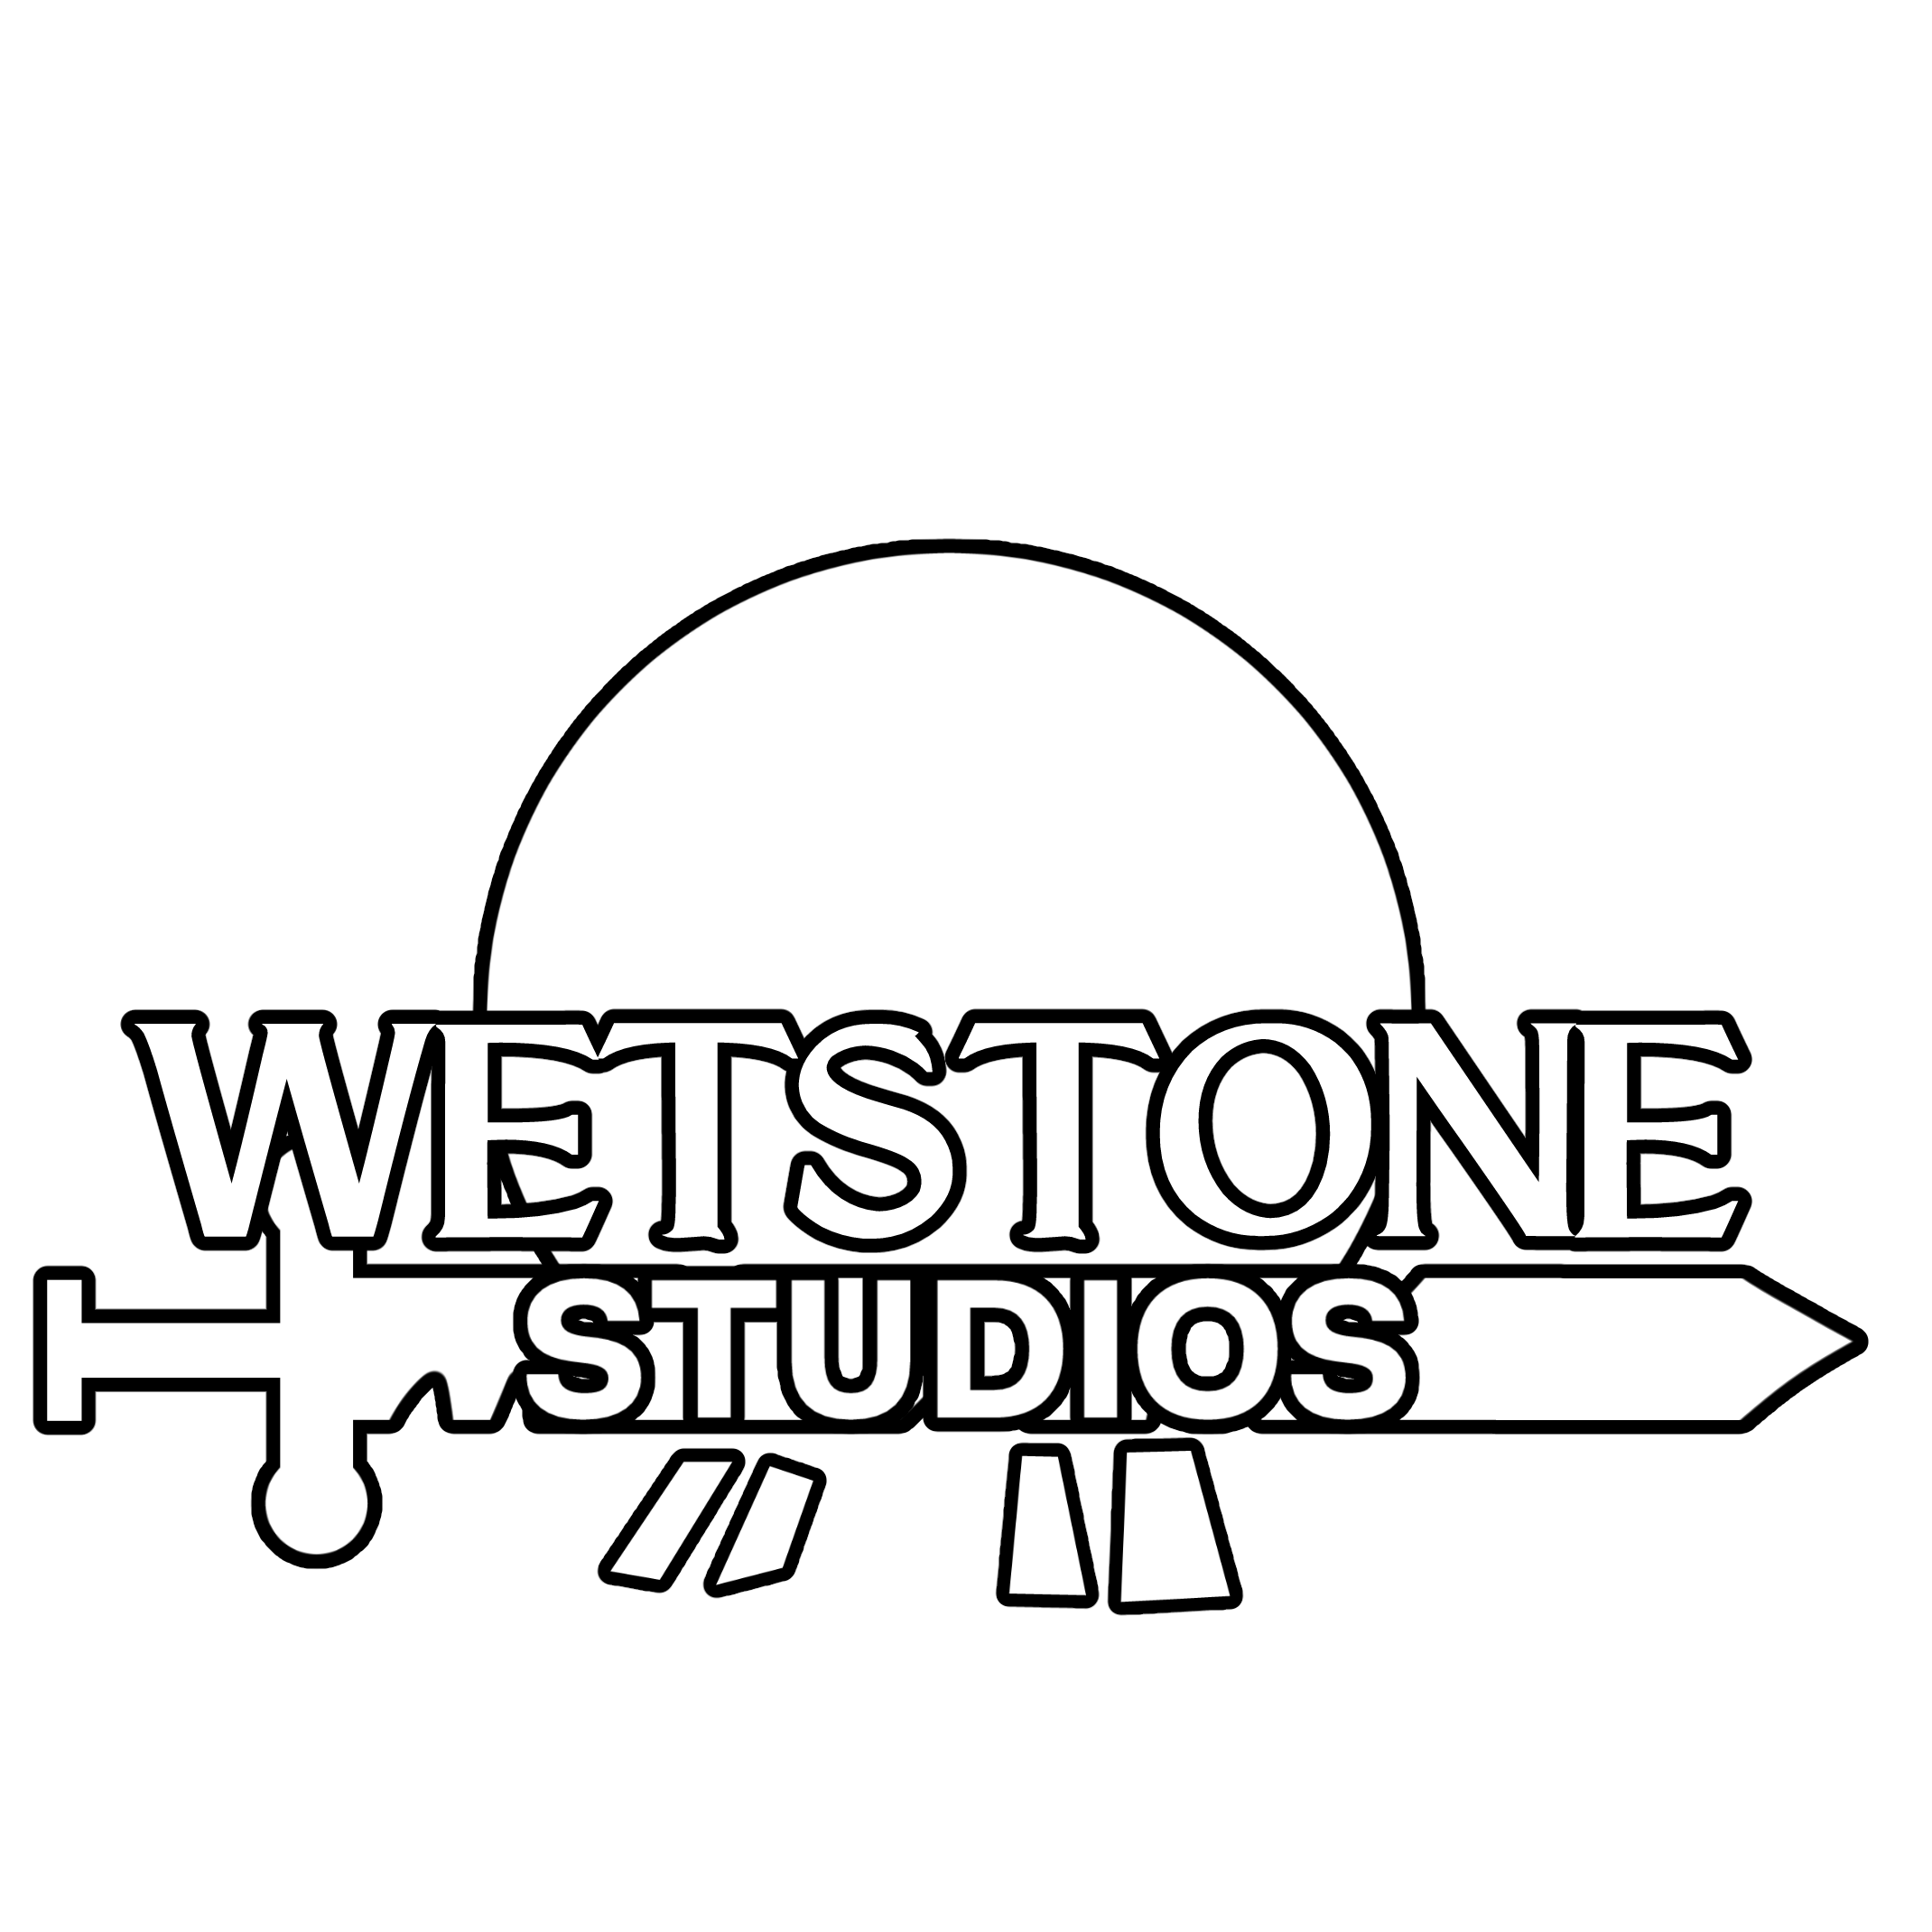 WETSTONE STUDIOS